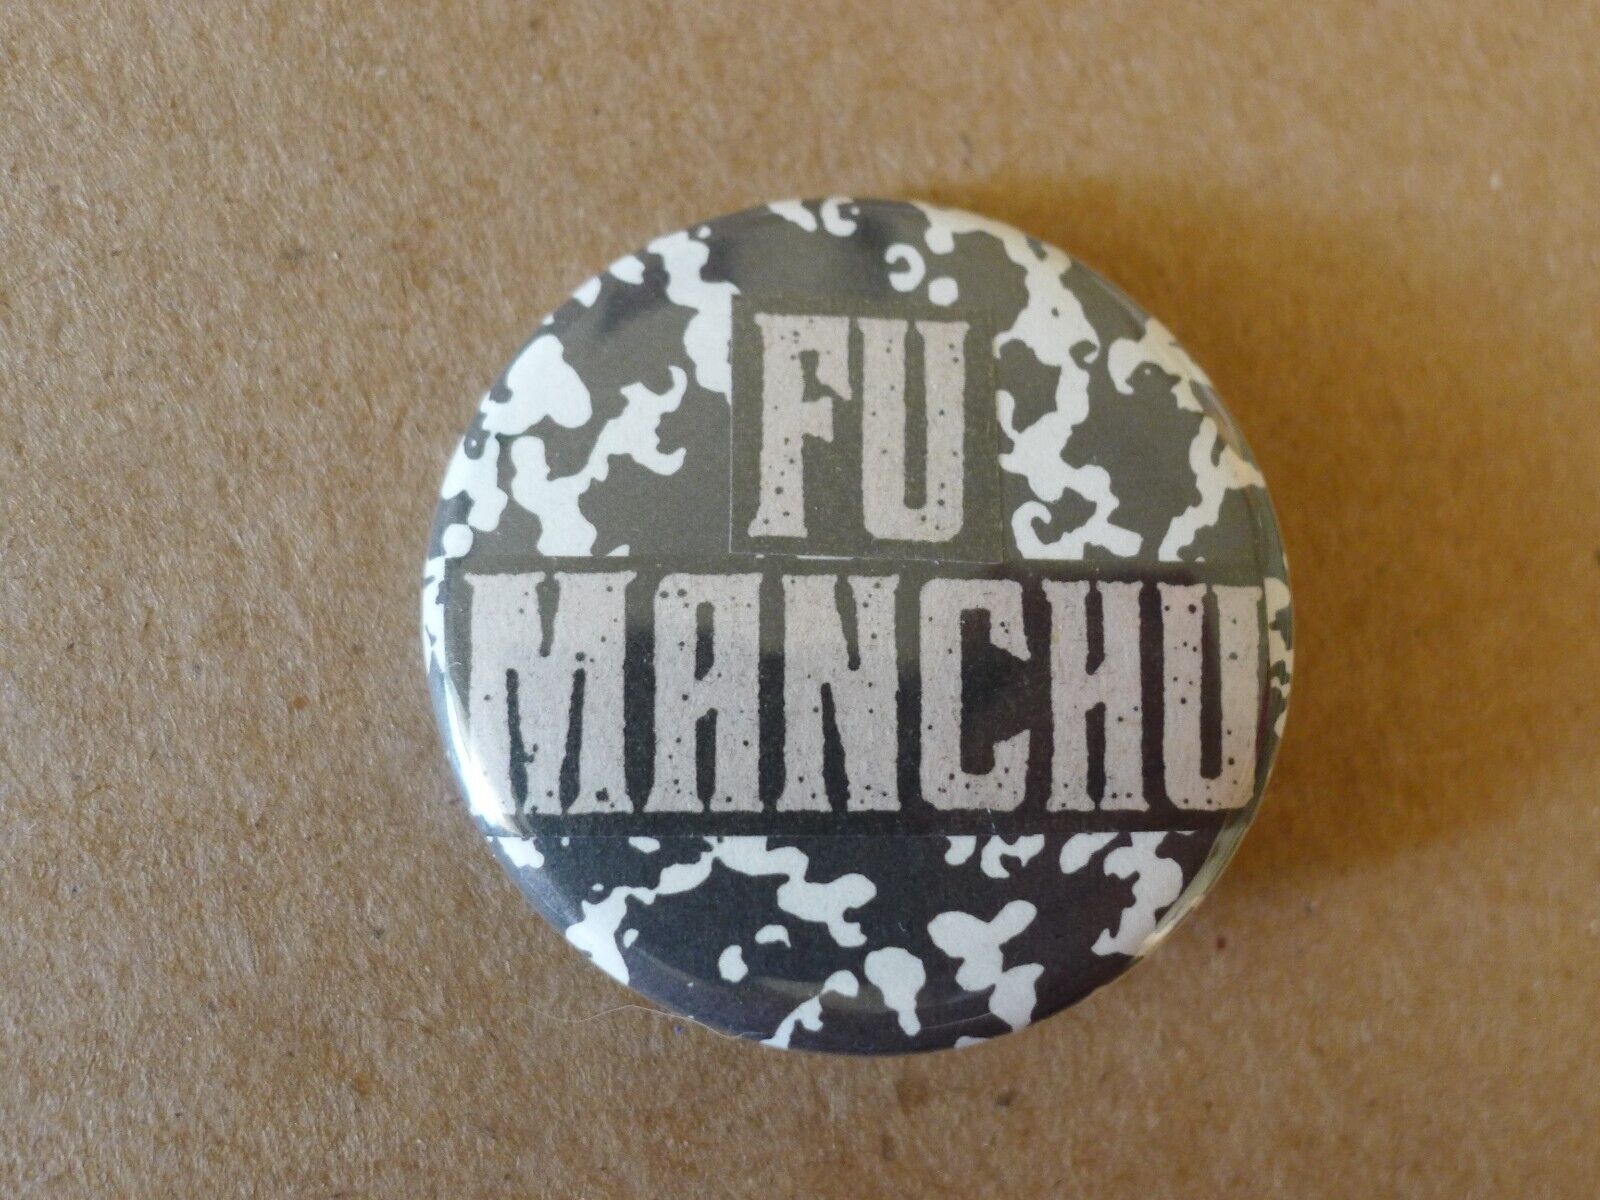 FU MANCHU Pinback Button PIN badge BAND stoner rock virulence nebula kyuss